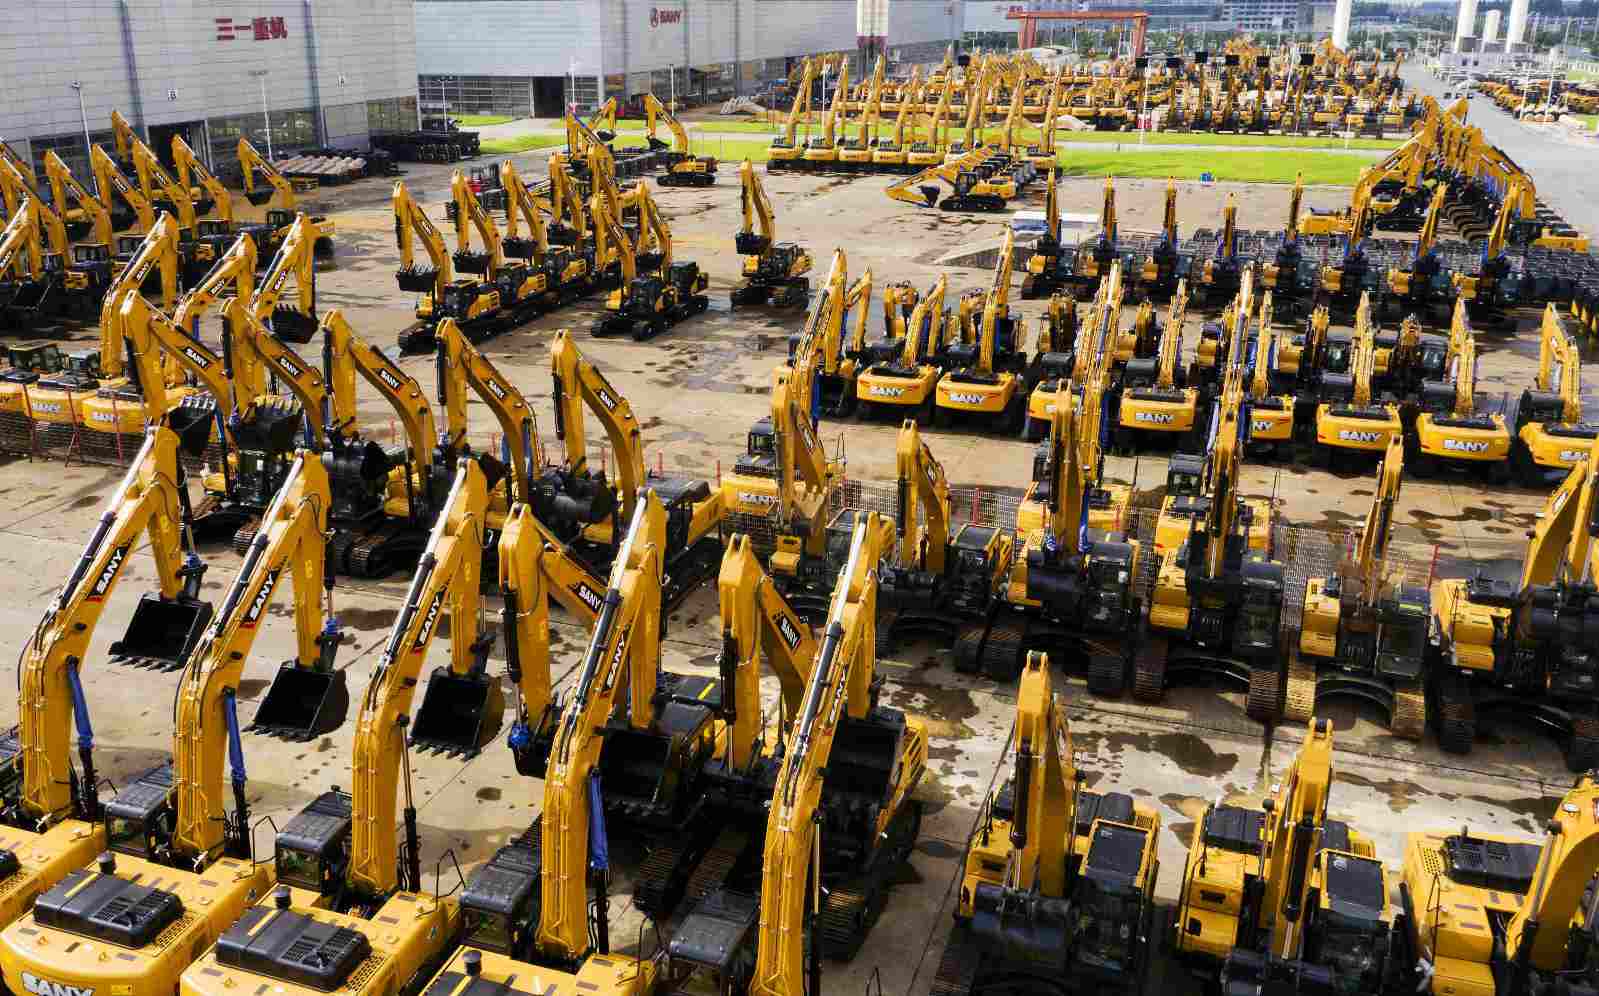 Excavators’ sales mirror vitality of Chinese economy